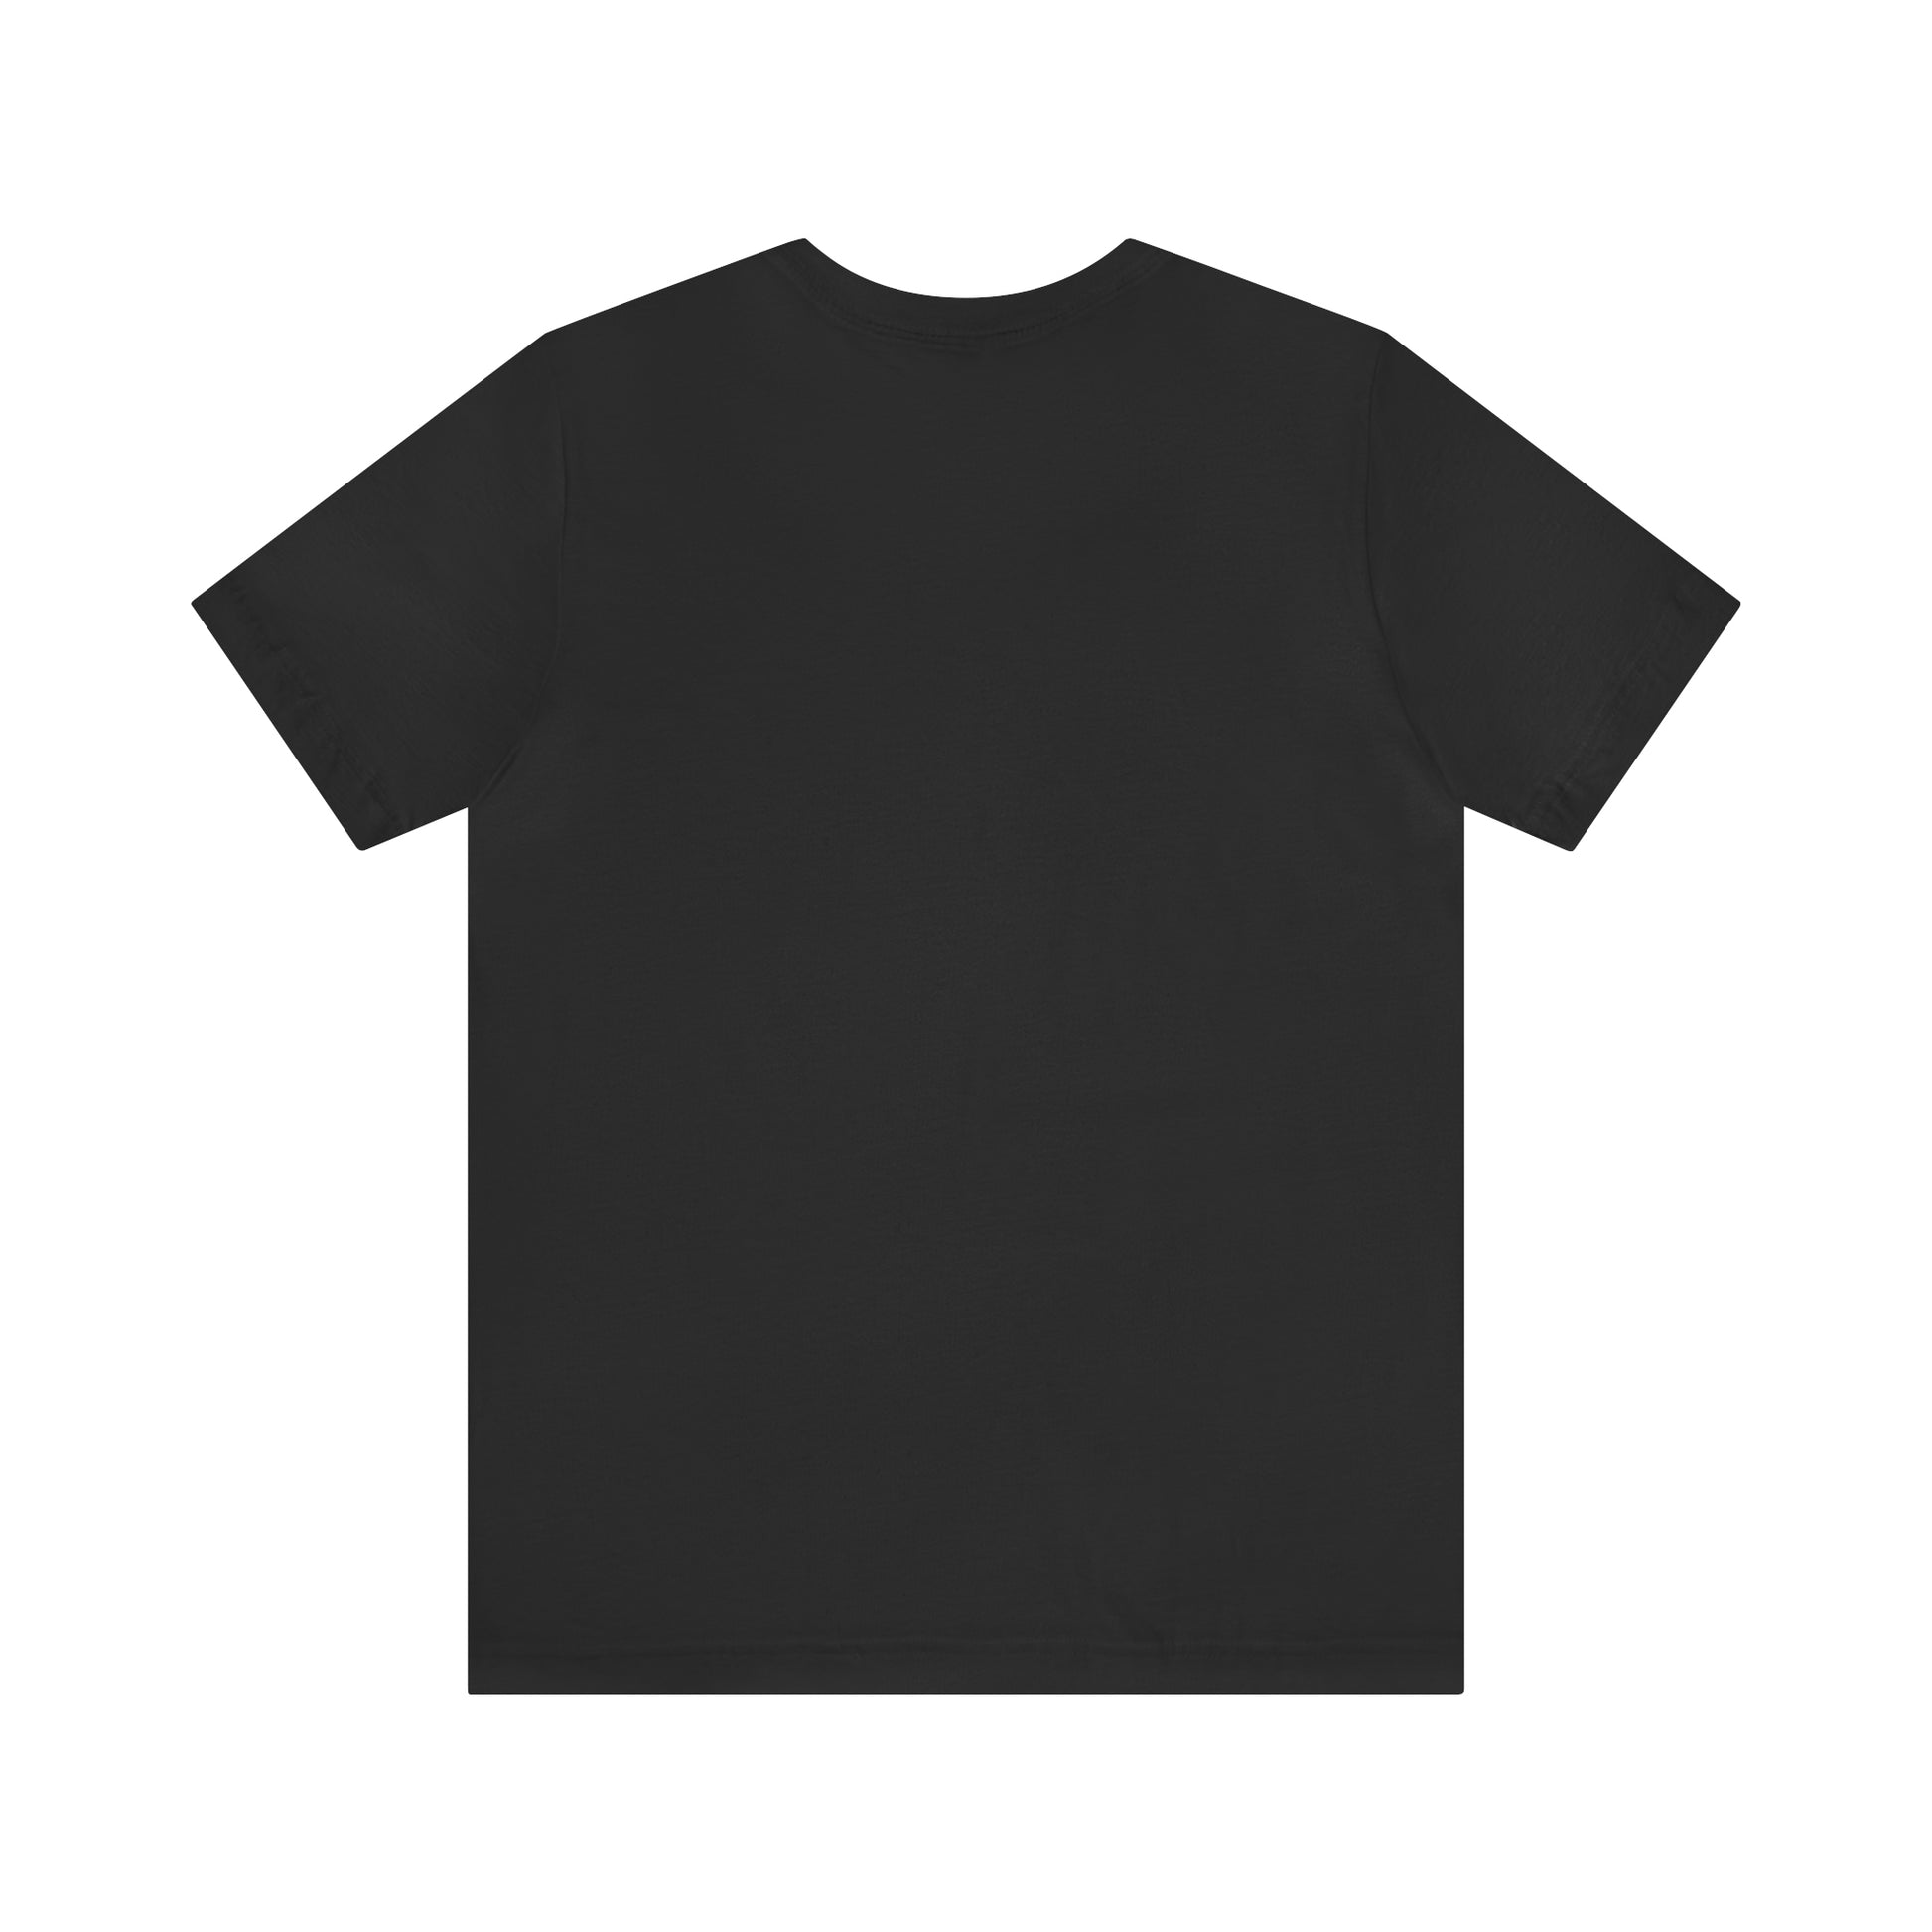 chihuahua black shirt